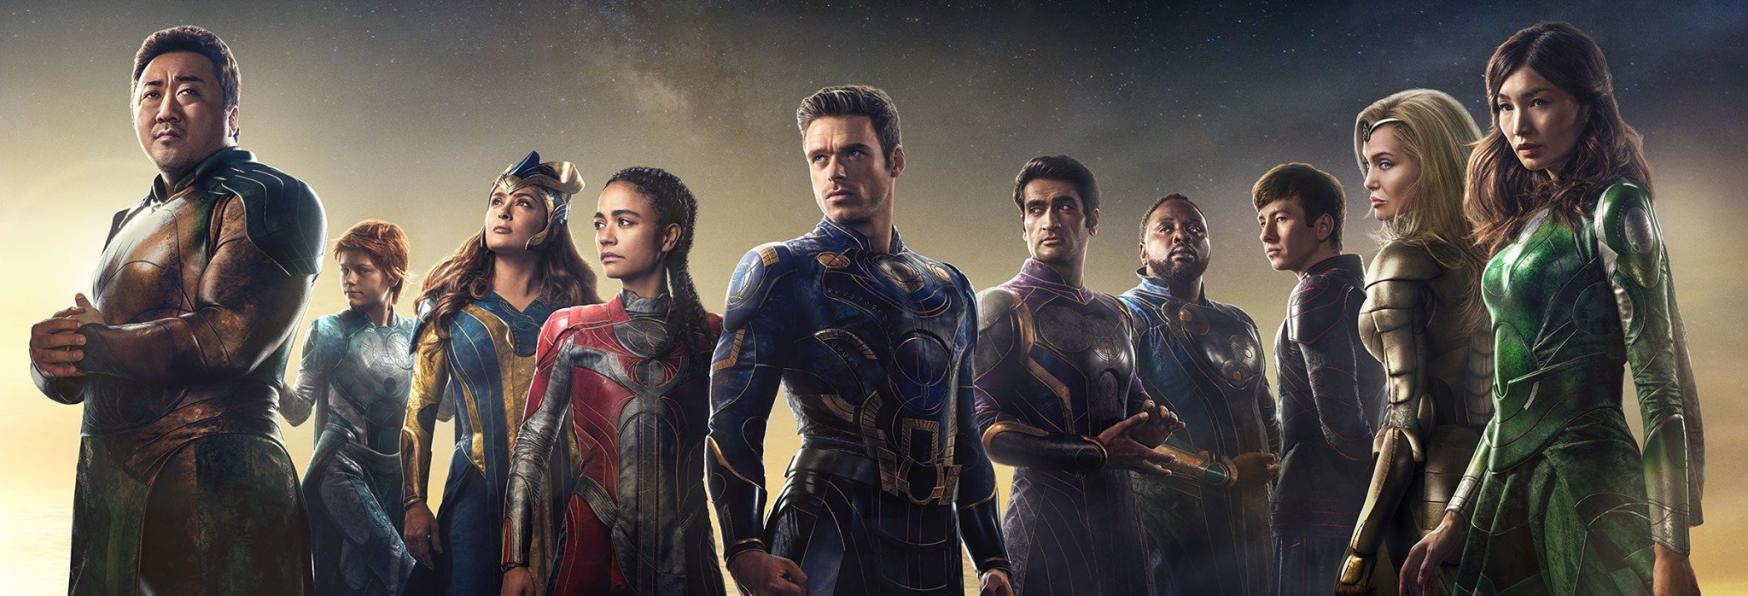 Eternals: in arrivo Serie TV legate al Film della Marvel? Gli Autori sembrano Favorevoli